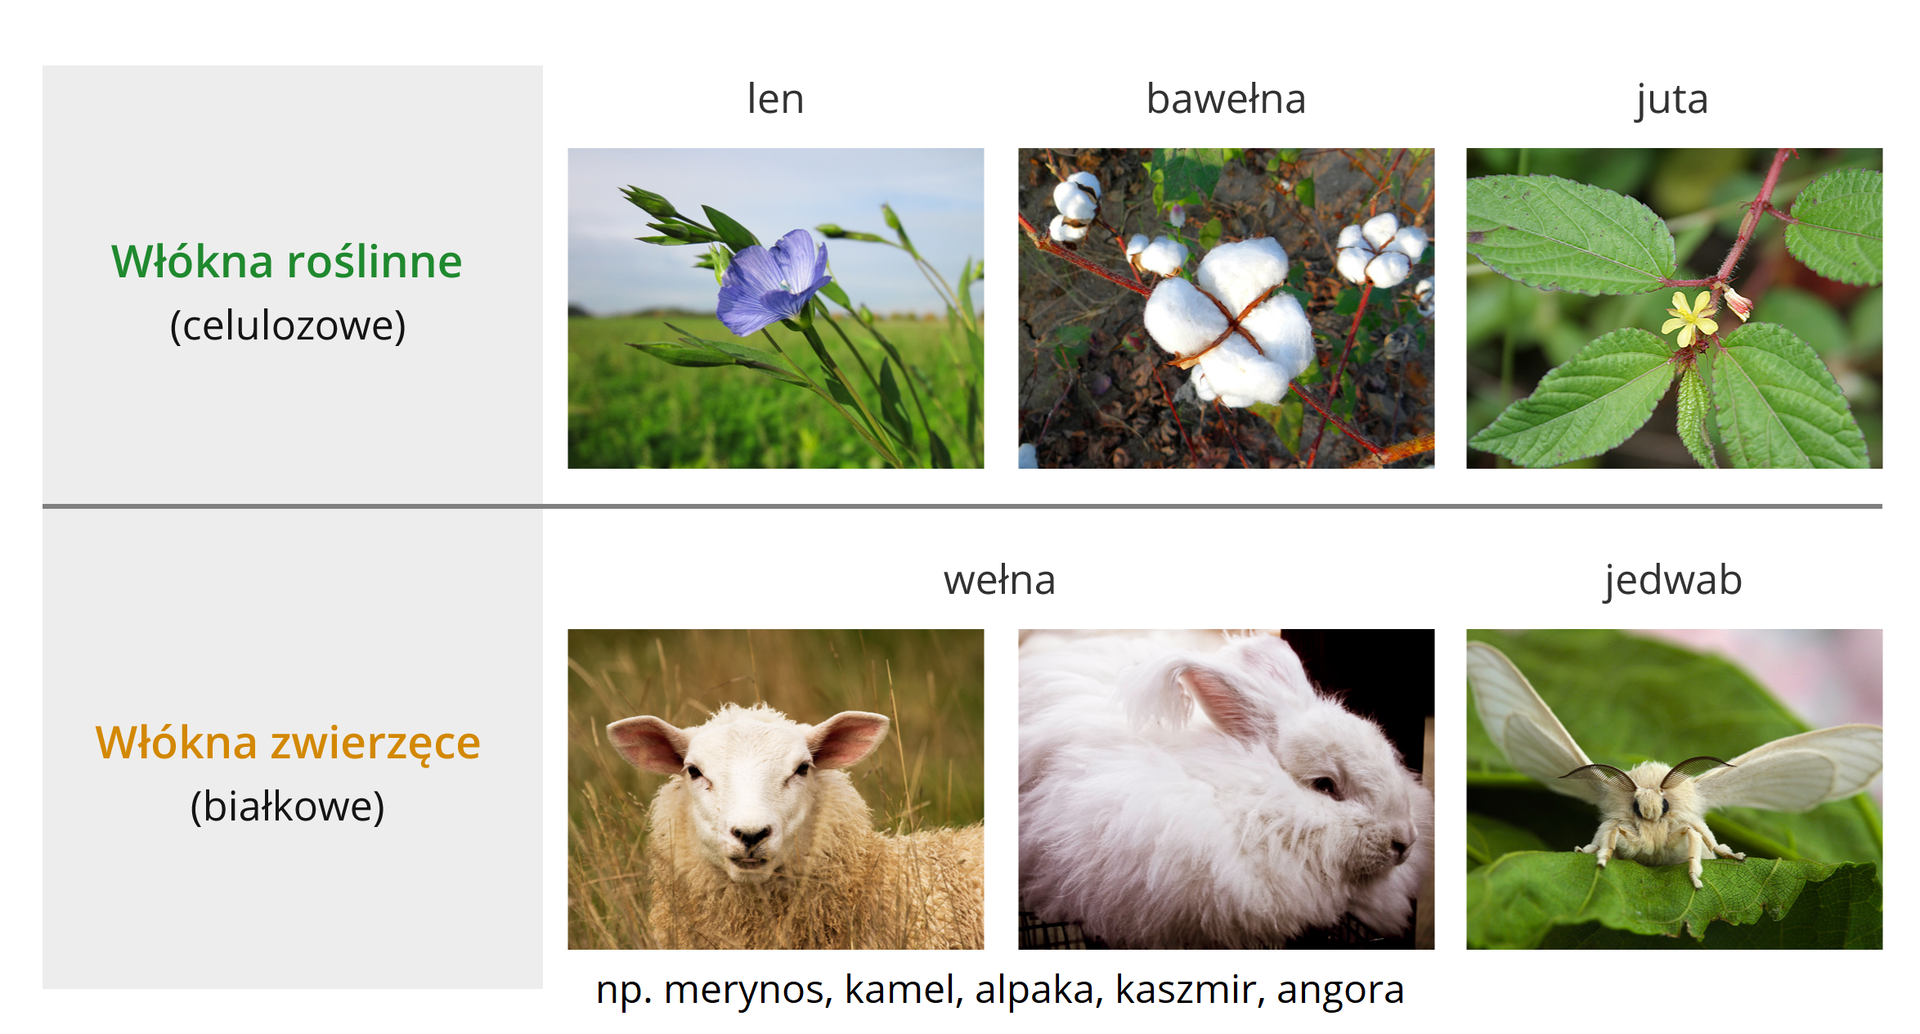 Grafika zawierająca przykłady źródeł włókien roślinnych i zwierzęcych. Włókna roślinne (celulozowe): len, bawełna i jutra. Kolejno zilustrowane są przez zdjęcia: delikatnego niebieskiego kwiatu na szczycie zielonej łodygi (len), kłębku bawełny na krzewie oraz gałązki juty zakończonej czterema liśćmi i delikatnym żółtym kwiatem. Włókna zwierzęce (białkowe): wełna, np. merynos, kamel, alpaka, kaszmir, angora oraz jedwab. Przedstawione są trzy zdjęcia: owcy, królika oraz jedwabnika morwowego. Jedwabnik morwowy to owad będący nocnym motylem. Przedstawiony na zdjęciu osobnik siedzi na liściu i jest skierowany przodem do obiektywu. Ma rozpostarte skrzydła, ciało pokryte białoszarym owłosieniem oraz długie, czarne czułki. 